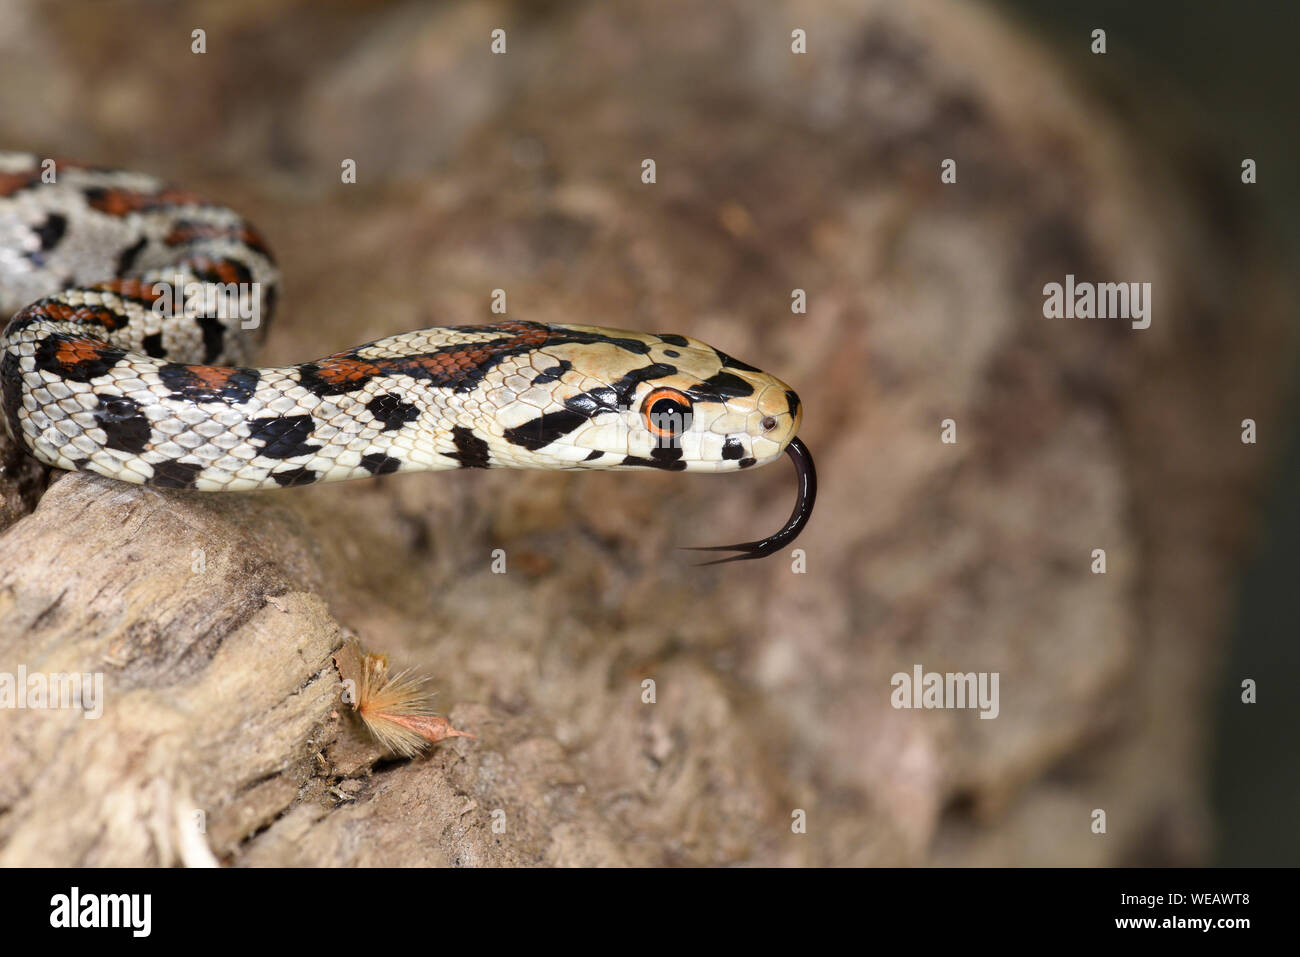 Europäische Leopard Snake oder Ratsnake (Zamenis situla) Close-up von Kopf mit Zunge erweitert, Bulgarien, April Stockfoto